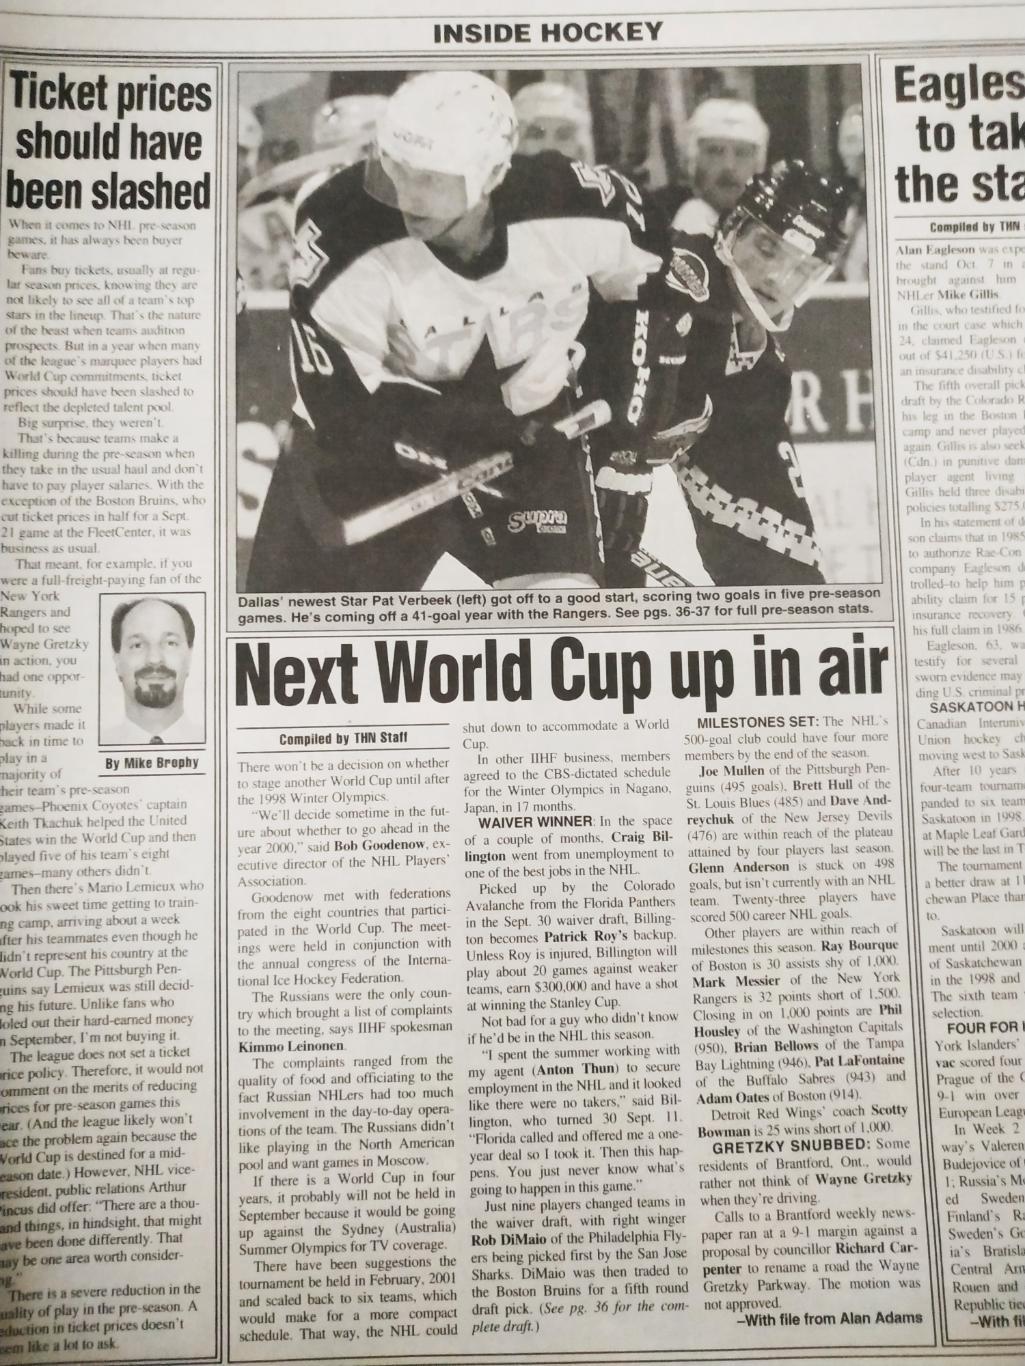 ХОККЕЙ ЖУРНАЛ ЕЖЕНЕДЕЛЬНИК НХЛ НОВОСТИ ХОККЕЯ NHL OCT.18 1996 THE HOCKEY NEWS 2